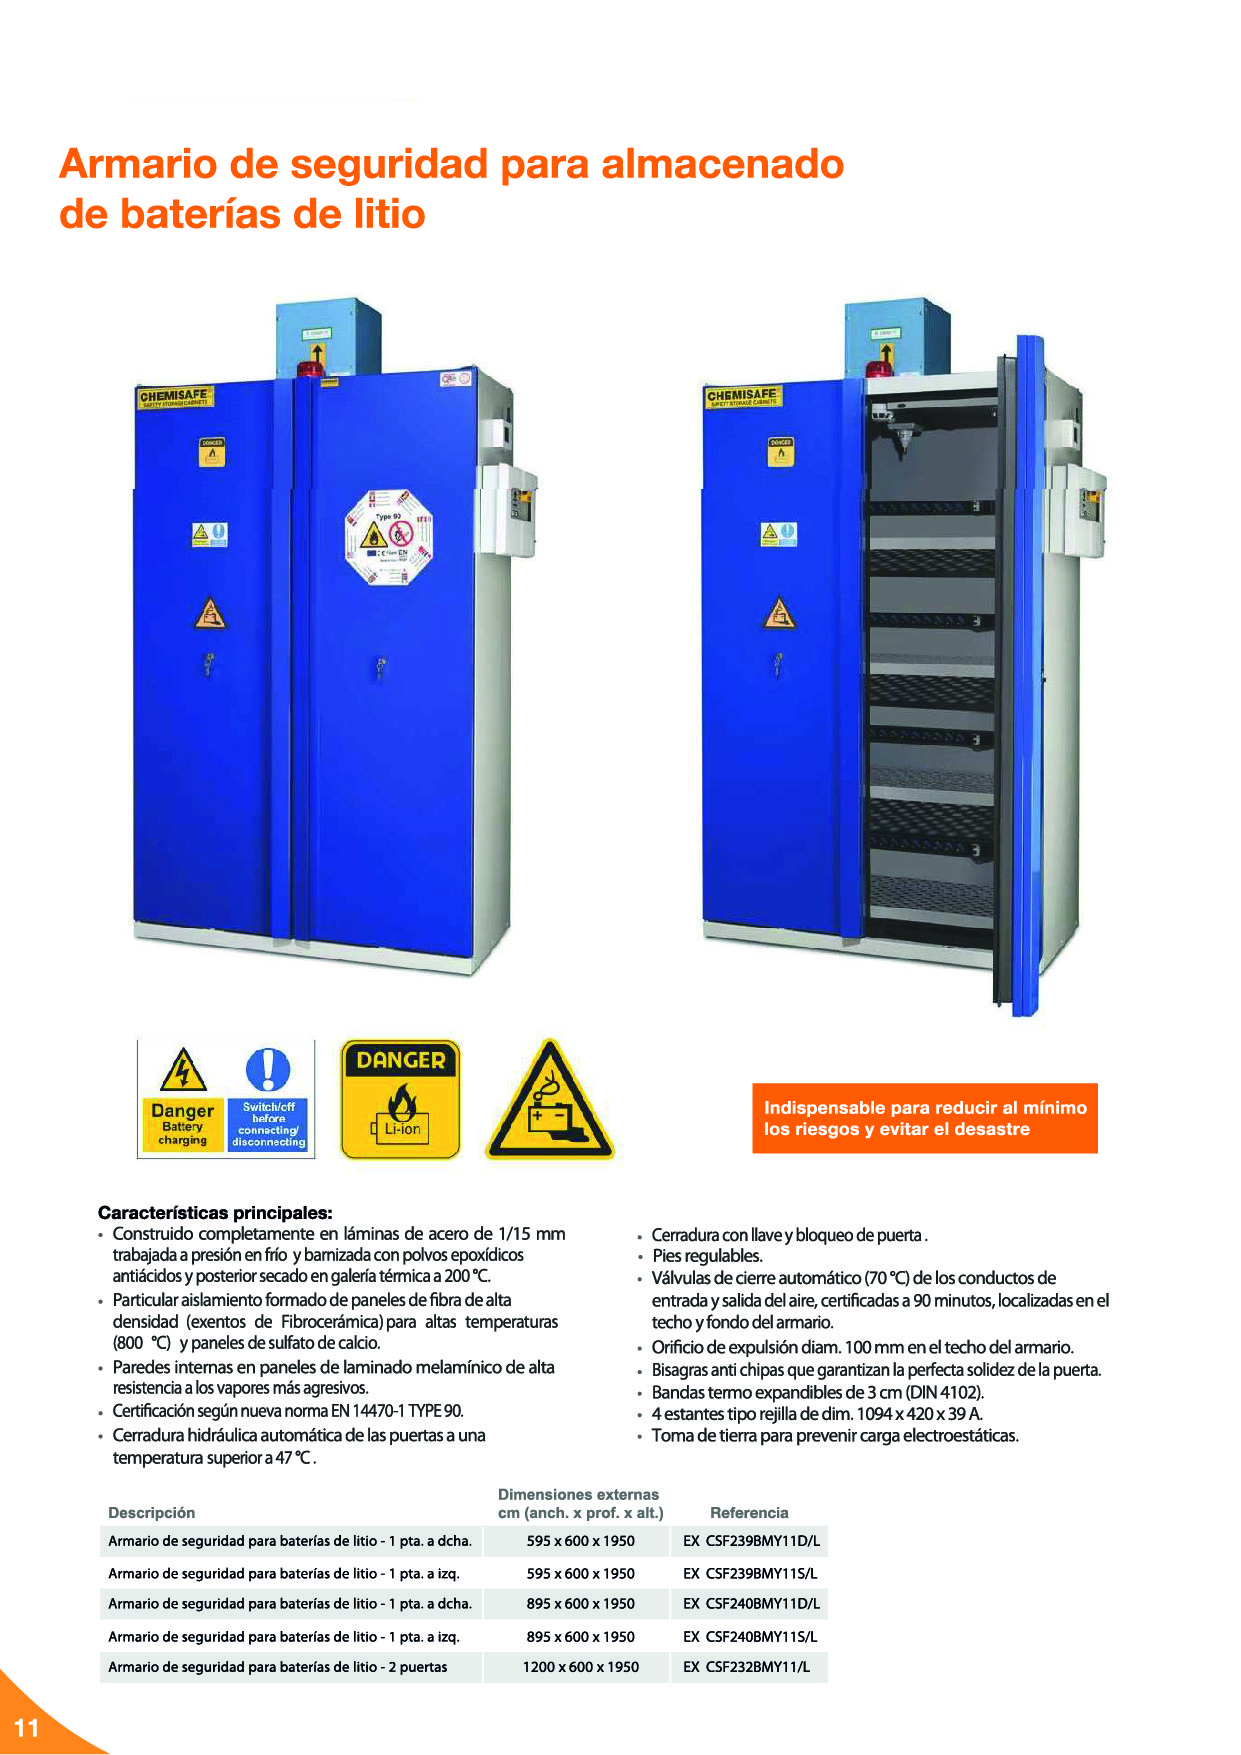 Baterías de litio: Seguridad para el almacenamiento, carga y transporte12